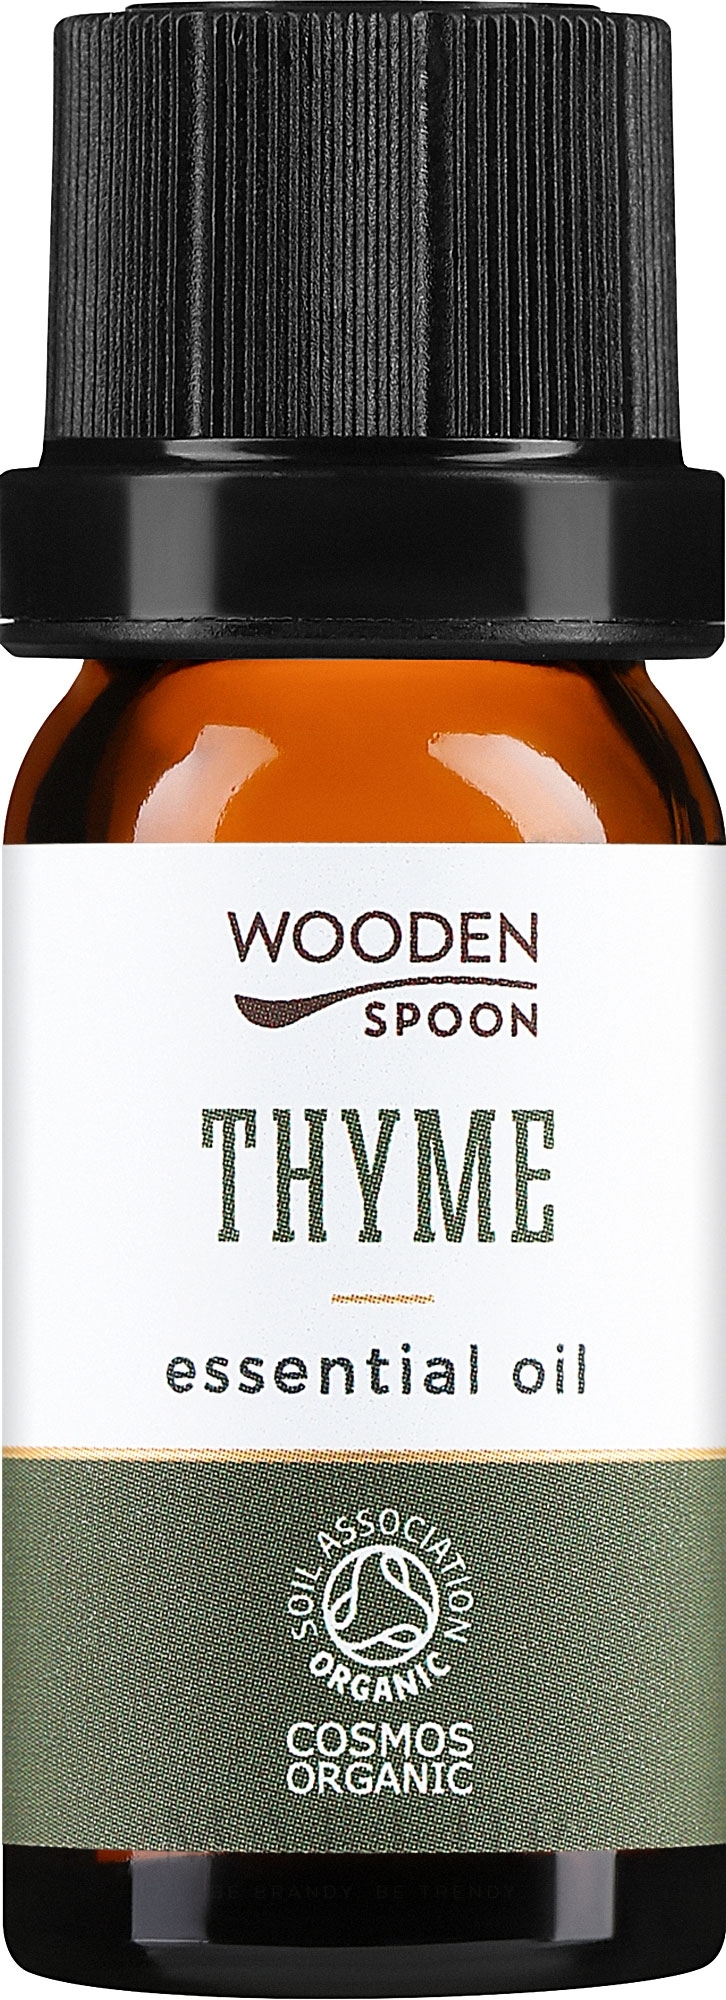 Ätherisches Öl Thymian - Wooden Spoon Thyme Essential Oil — Bild 5 ml